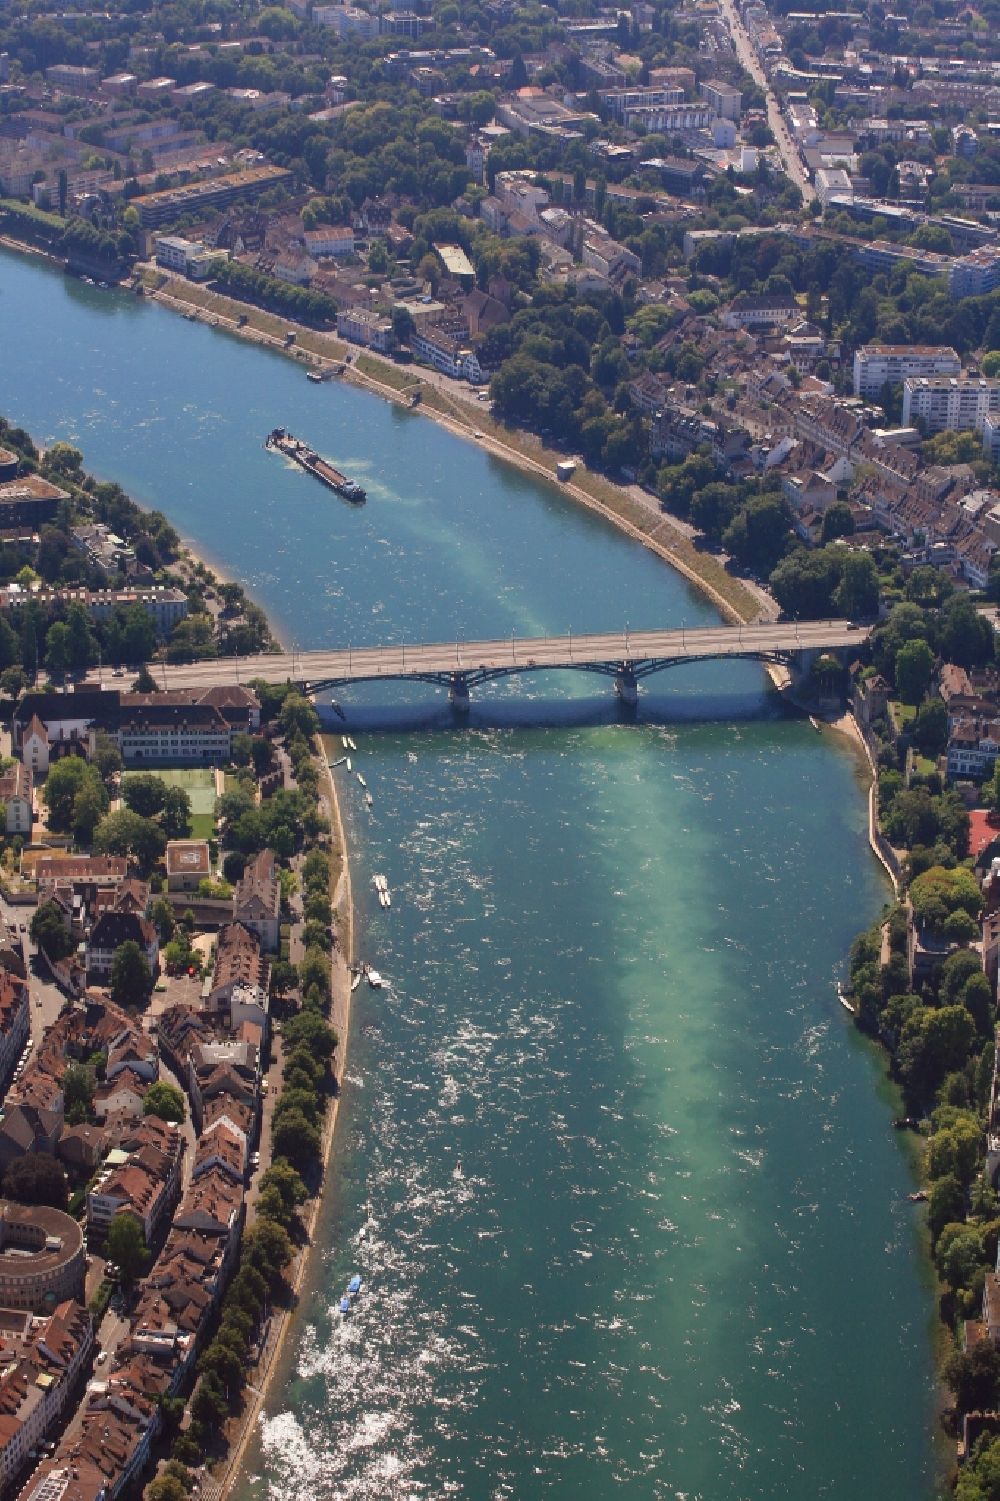 Basel aus der Vogelperspektive: Ausbaggerungsarbeiten im Rhein bei Niedrigwasser zur Tieferlegung der Fahrrinne am Rheinknie in Basel, Schweiz